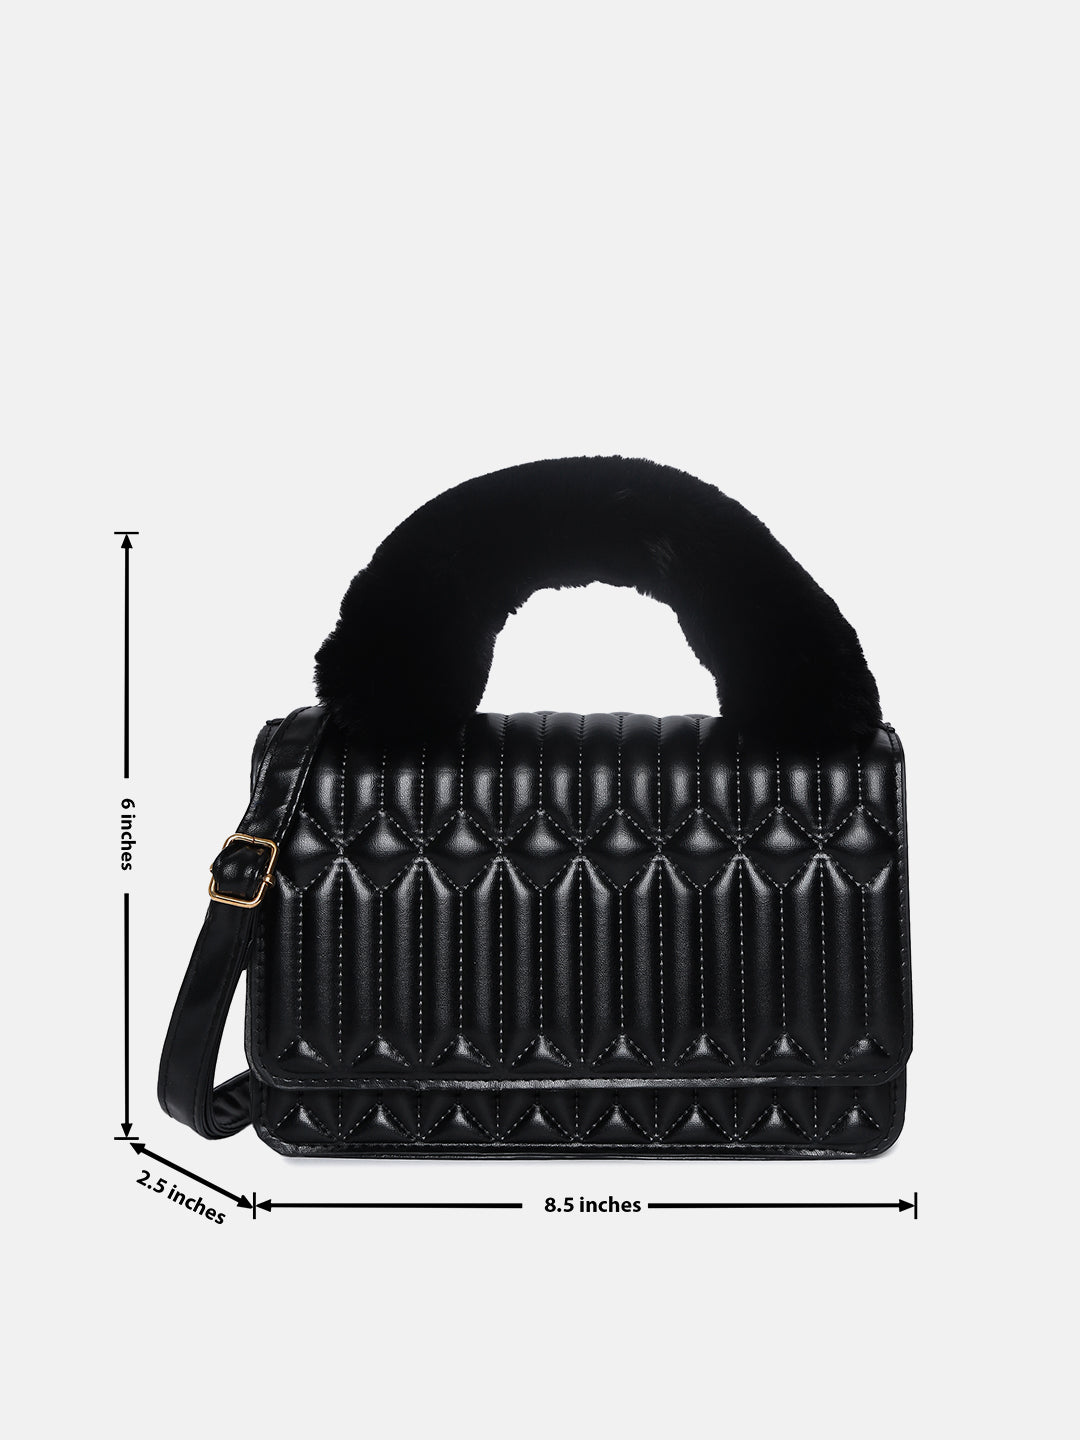 Textured Trendsetter Black Cross Body Bag